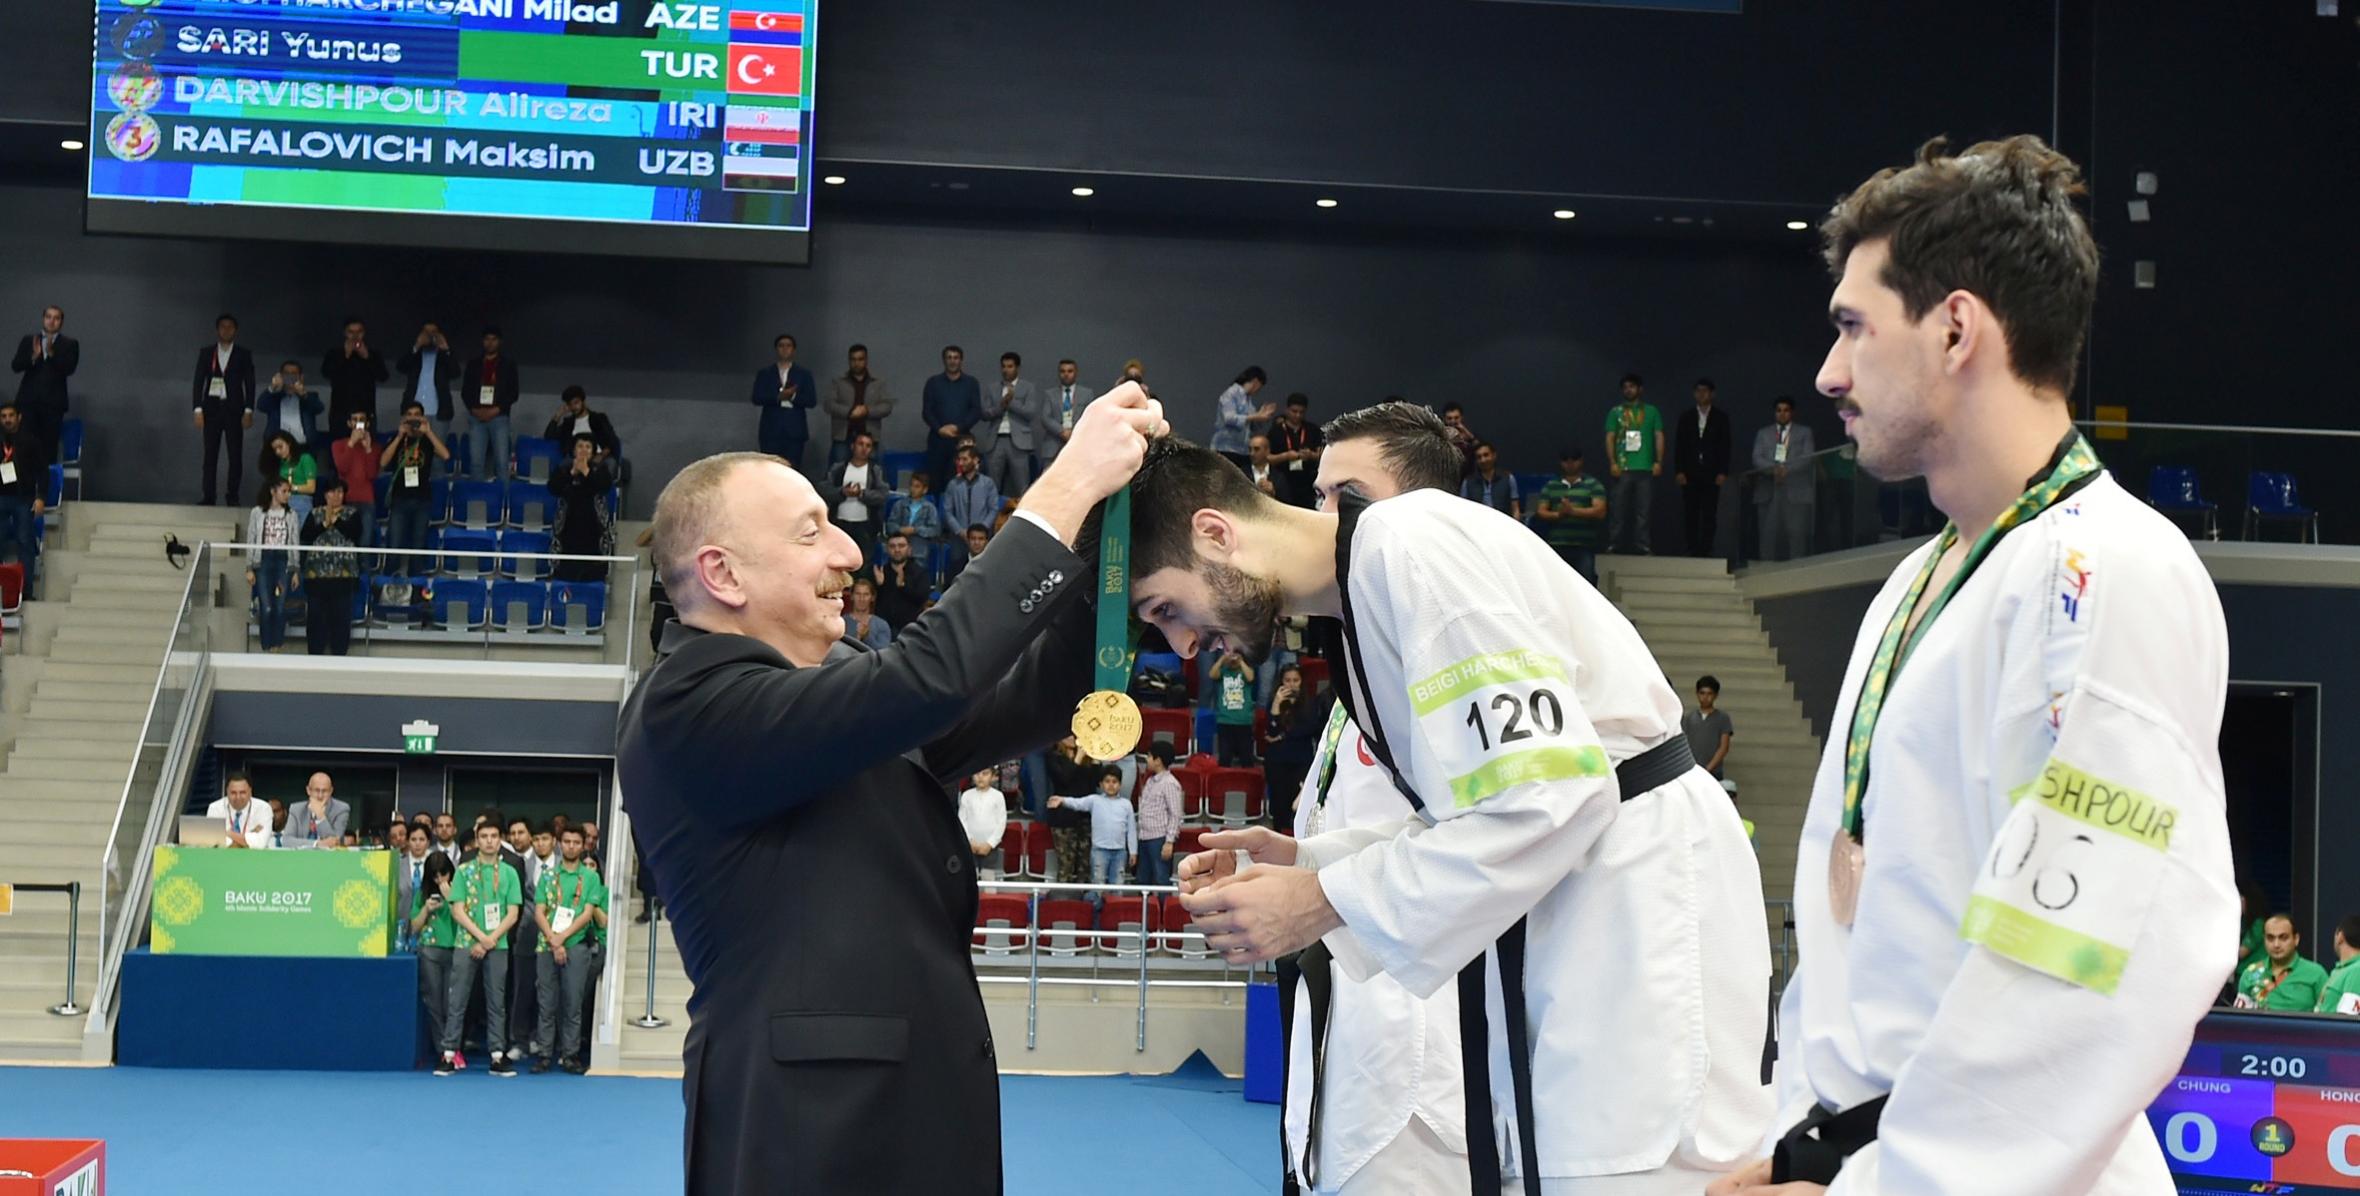 İlham Əliyev IV İslam Həmrəyliyi Oyunlarında qalib gələn taekvandoçulara medalları təqdim edib